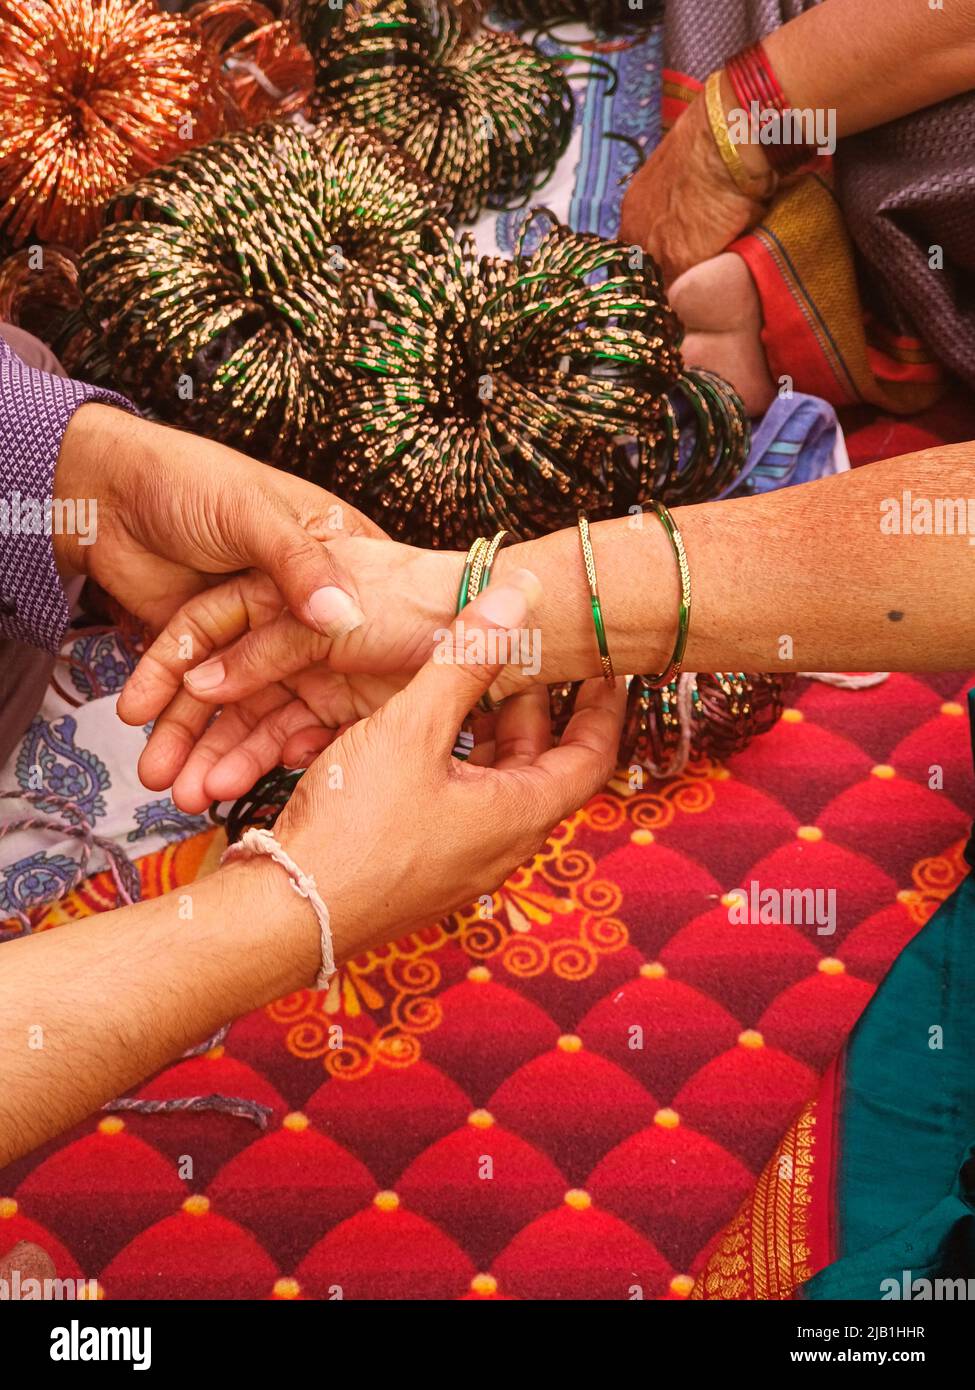 Vor der Trauung eine Dame Armreif Verkäufer setzt grüne Glas Armreifen, indische Kultur. Stockfoto